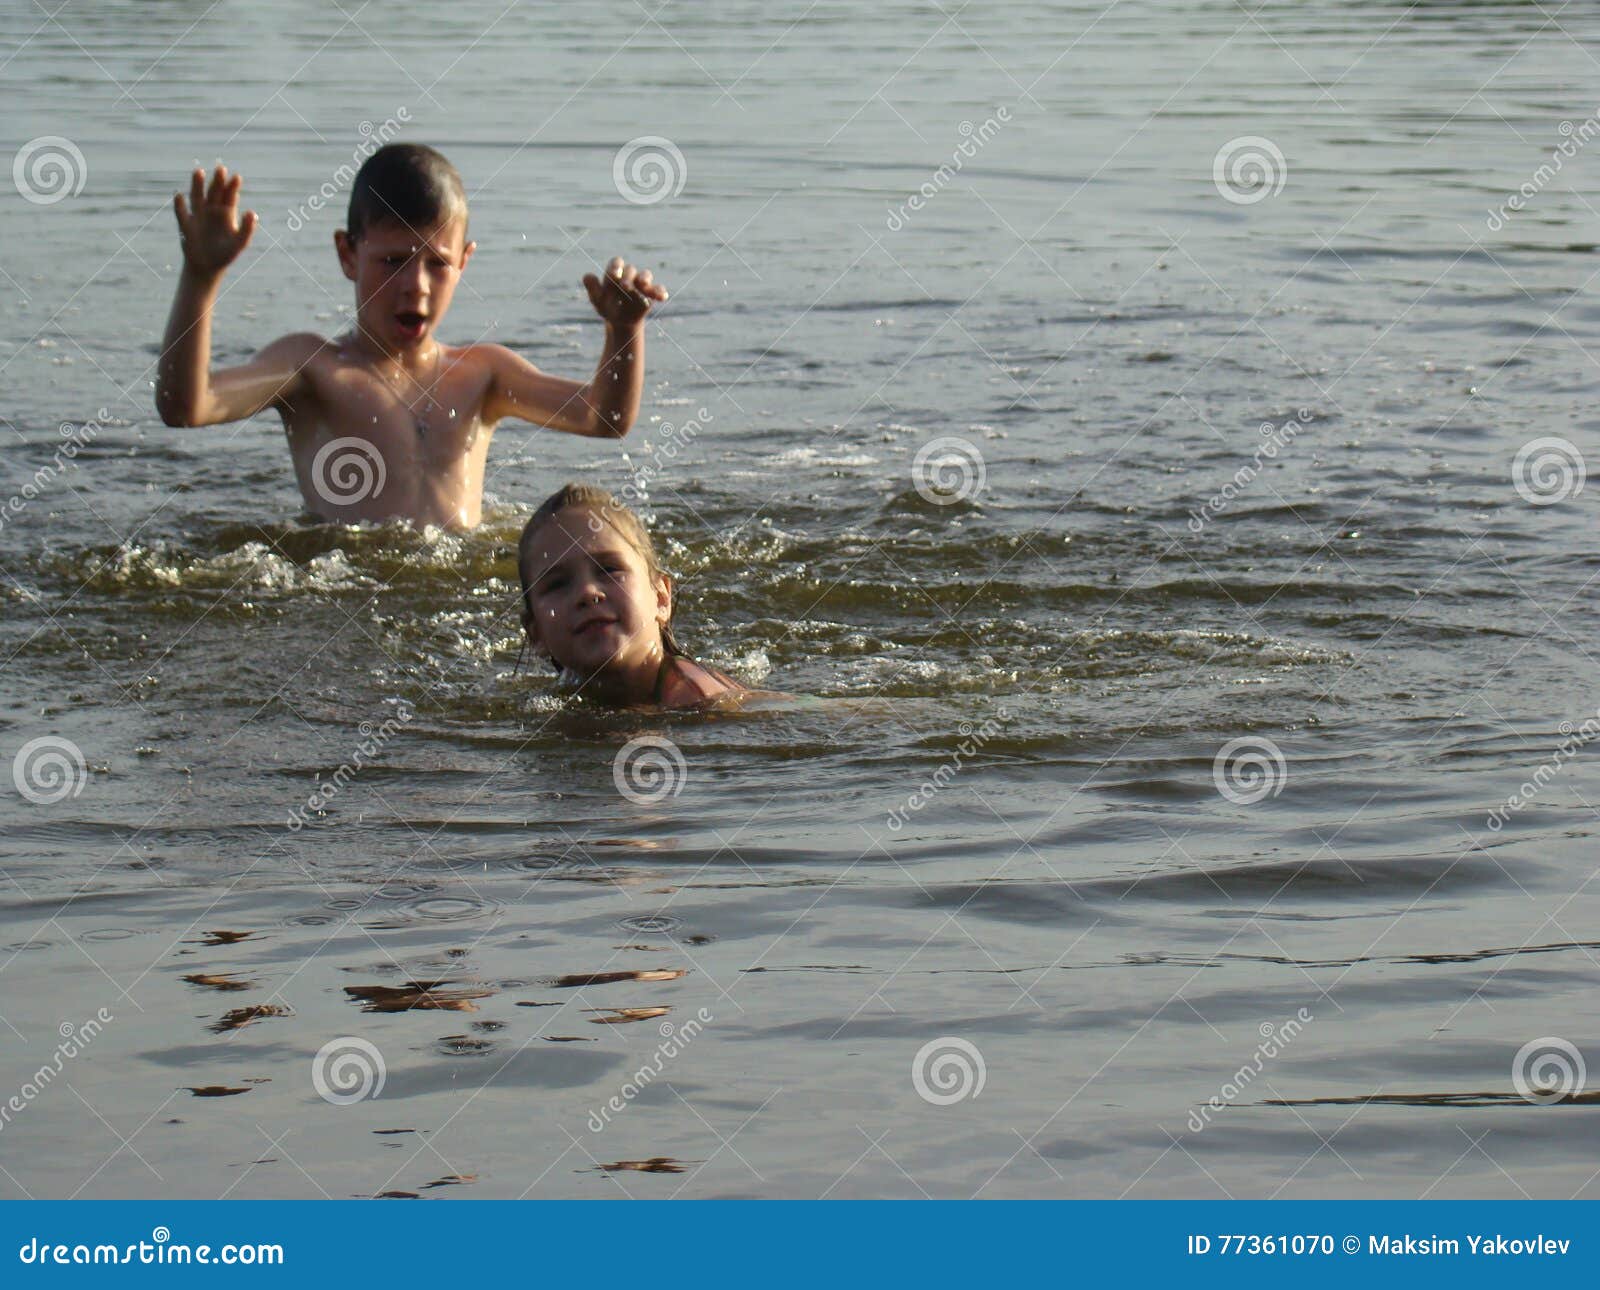 Человек выйдя из реки после купания даже. Дети купаются в реке. Дети моются в реке. Дети плещутся в реке. Купание на речке.